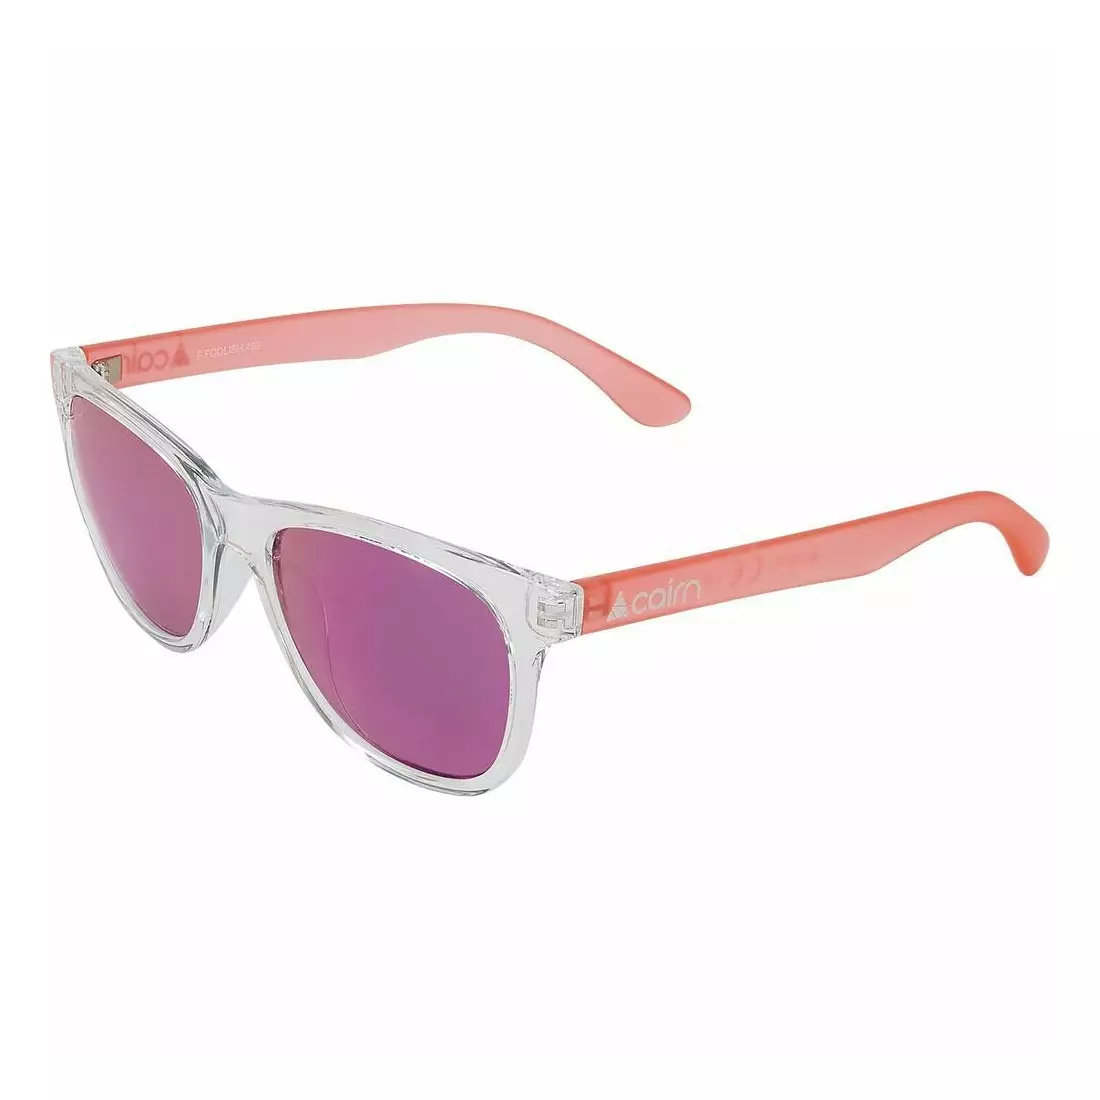 CAIRN okulary sportowe FOOLISH crystal pink FFOOLISH62